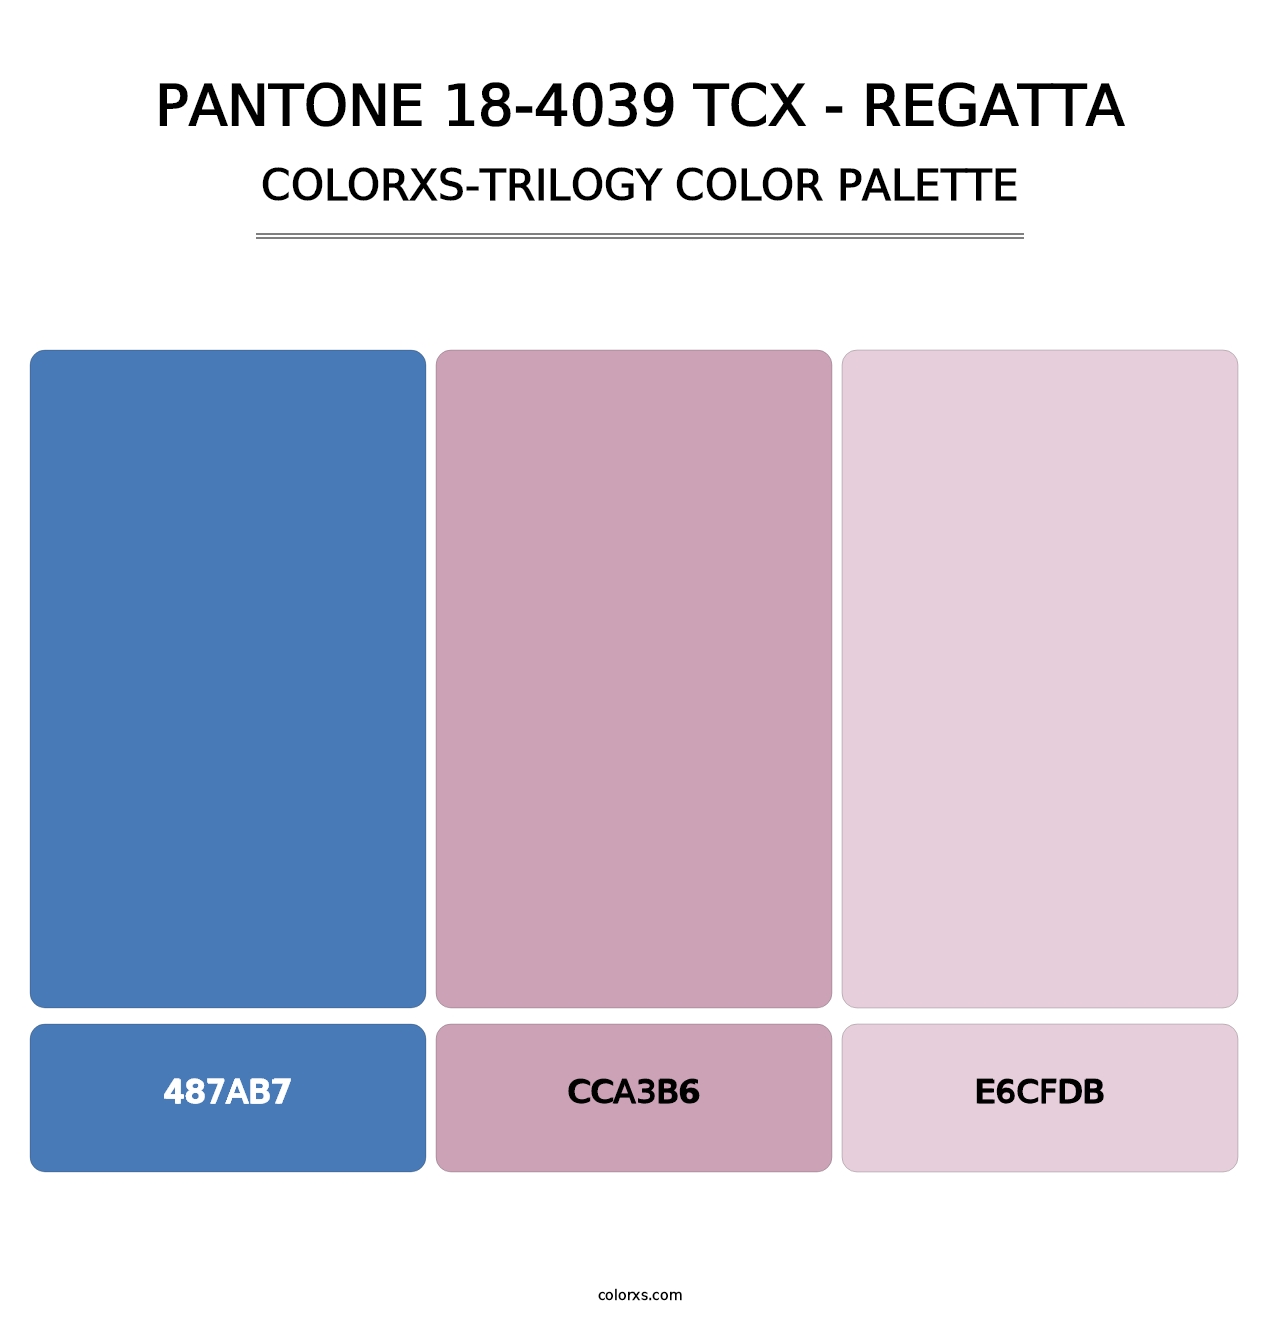 PANTONE 18-4039 TCX - Regatta - Colorxs Trilogy Palette